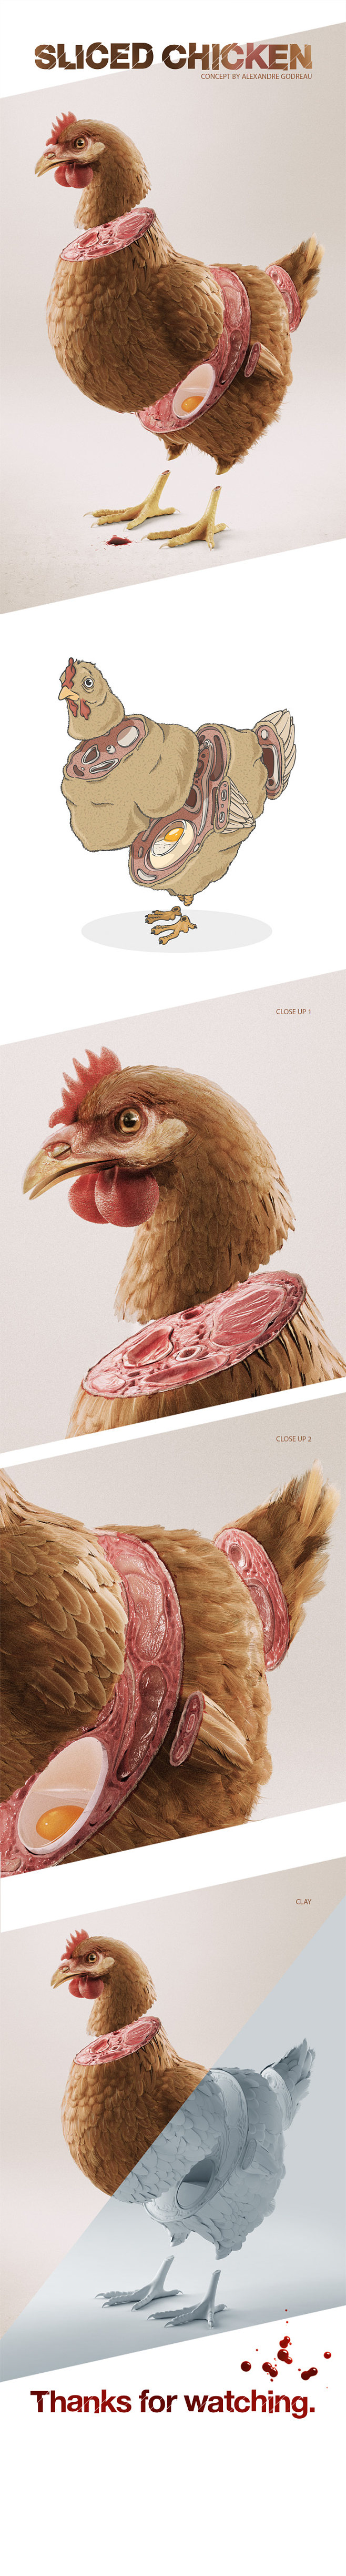 Sliced Chicken : "Sl...